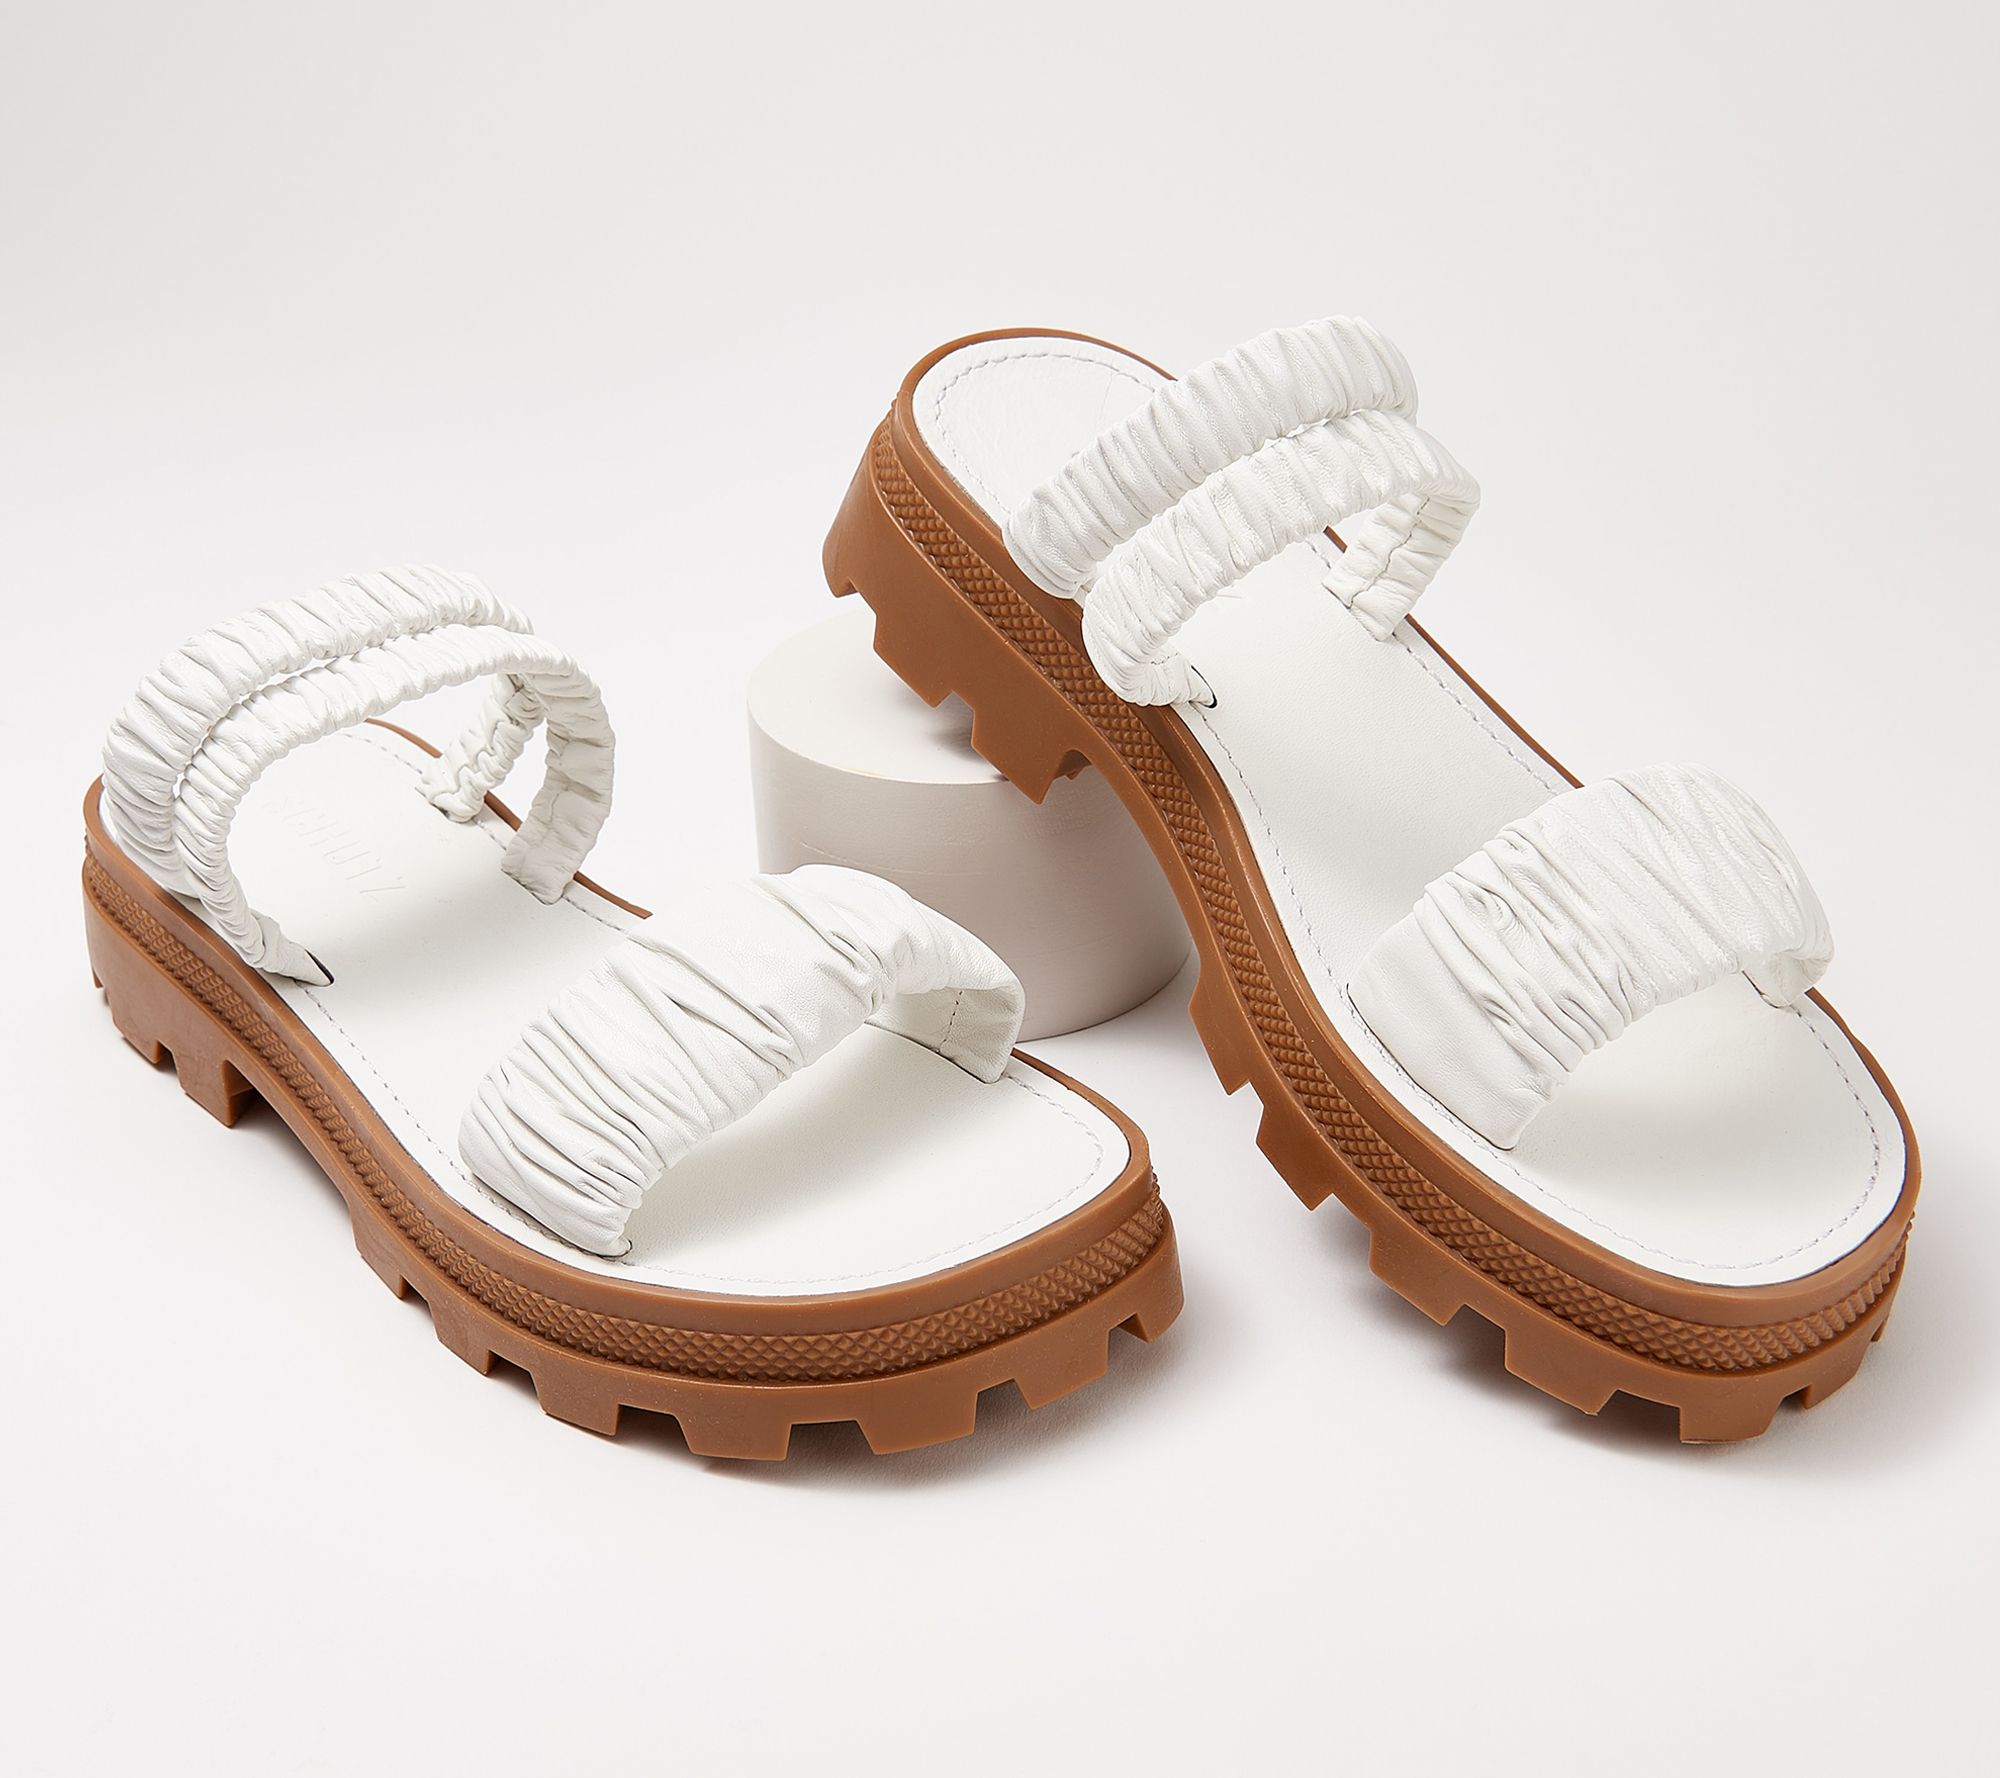 Schutz Leather Sporty Slide Sandals - Lirah - QVC.com